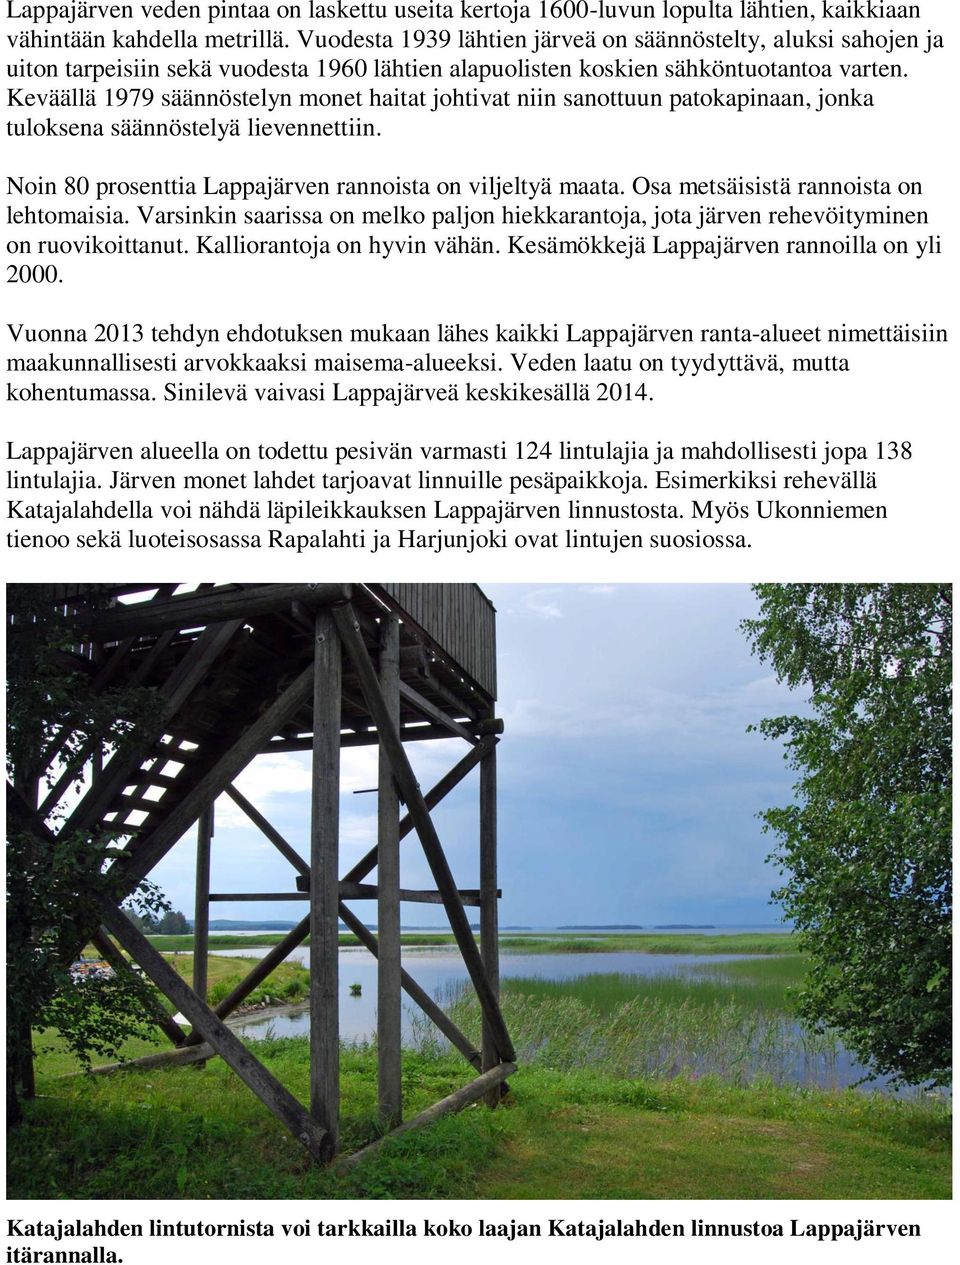 Keväällä 1979 säännöstelyn monet haitat johtivat niin sanottuun patokapinaan, jonka tuloksena säännöstelyä lievennettiin. Noin 80 prosenttia Lappajärven rannoista on viljeltyä maata.